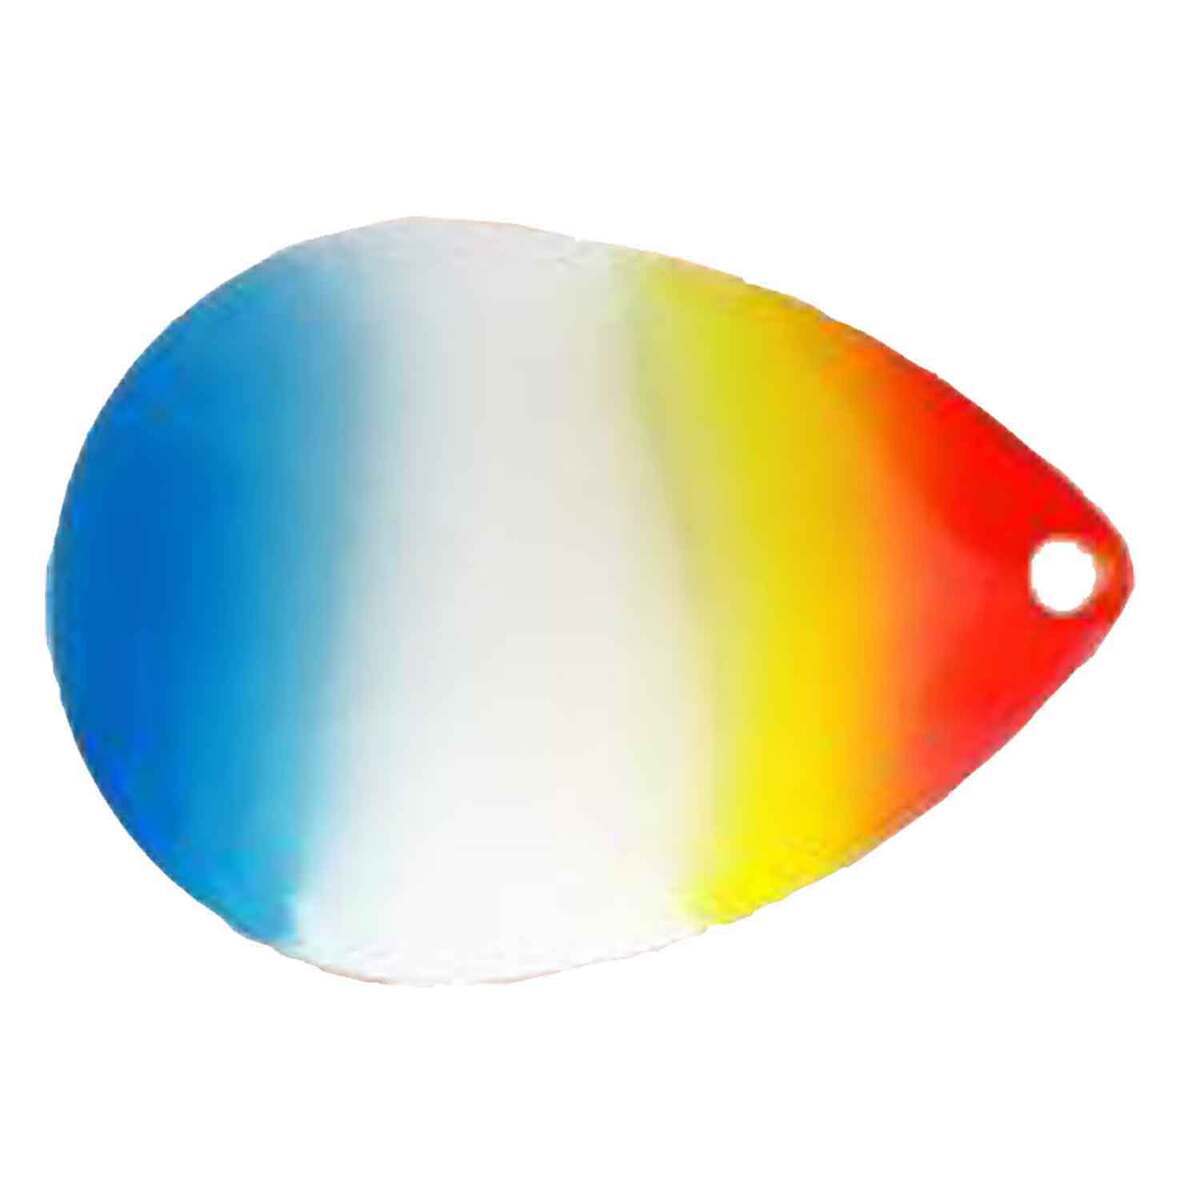 https://www.sportsmans.com/medias/oregon-tackle-colorado-blades-lure-component-rainbow-blue-45-1001300-1.jpg?context=bWFzdGVyfGltYWdlc3wyODcxOXxpbWFnZS9qcGVnfGgwMy9oODAvMTA0NzU3NTA5MTYxMjYvMTAwMTMwMC0xX2Jhc2UtY29udmVyc2lvbkZvcm1hdF8xMjAwLWNvbnZlcnNpb25Gb3JtYXR8YTI0NzNkOTBhZjQ5Y2QwMjUxMDQ3OTRiMjczYjRlNDAwZWFmMTBjYTAzOWViNGExYjU1YTQzMDA5MGZiZDQwMw